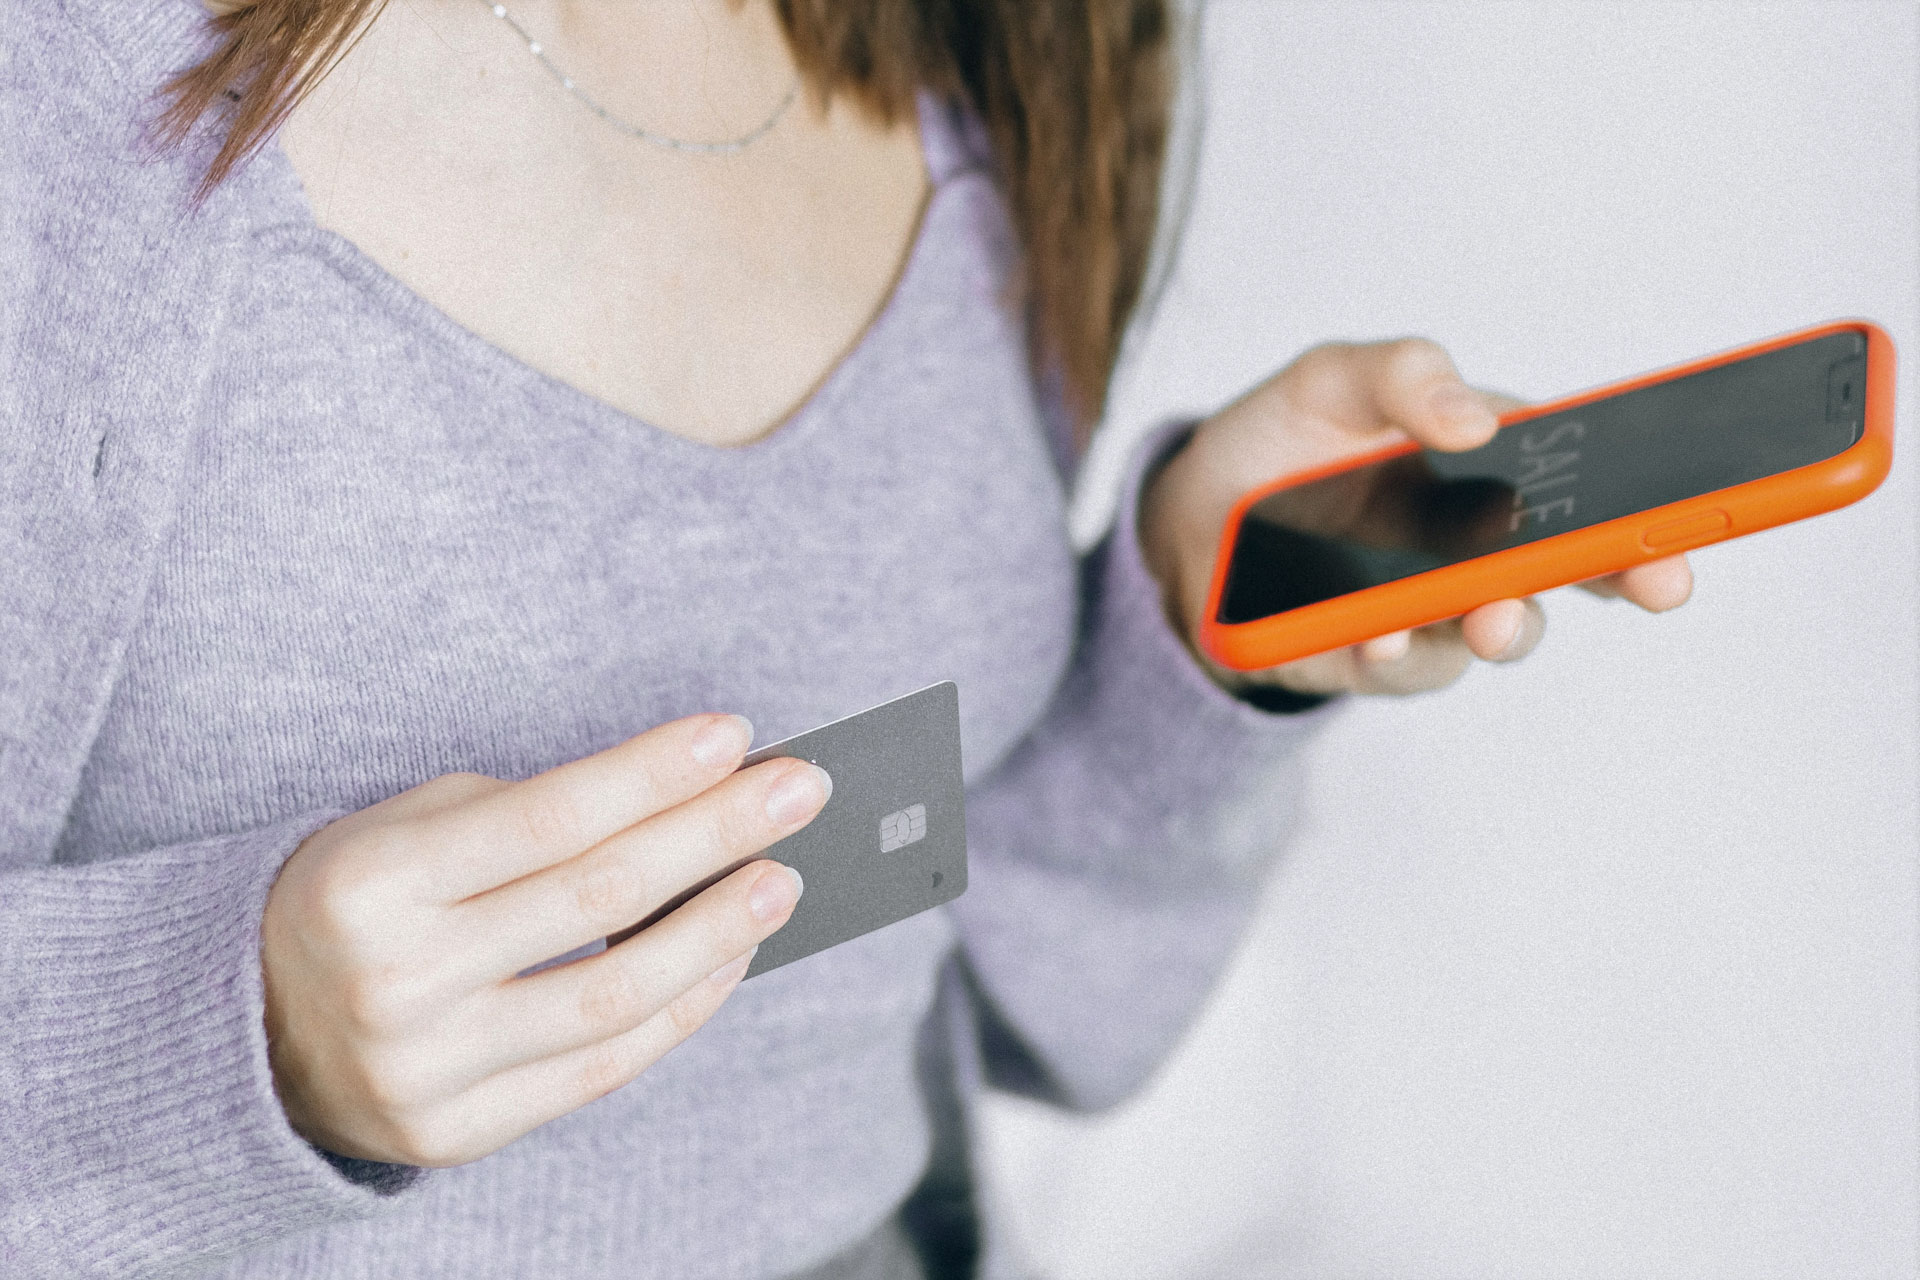 Medios de pago electrónico. Mujer con tarjeta de crédito y dispositivo móvil en mano